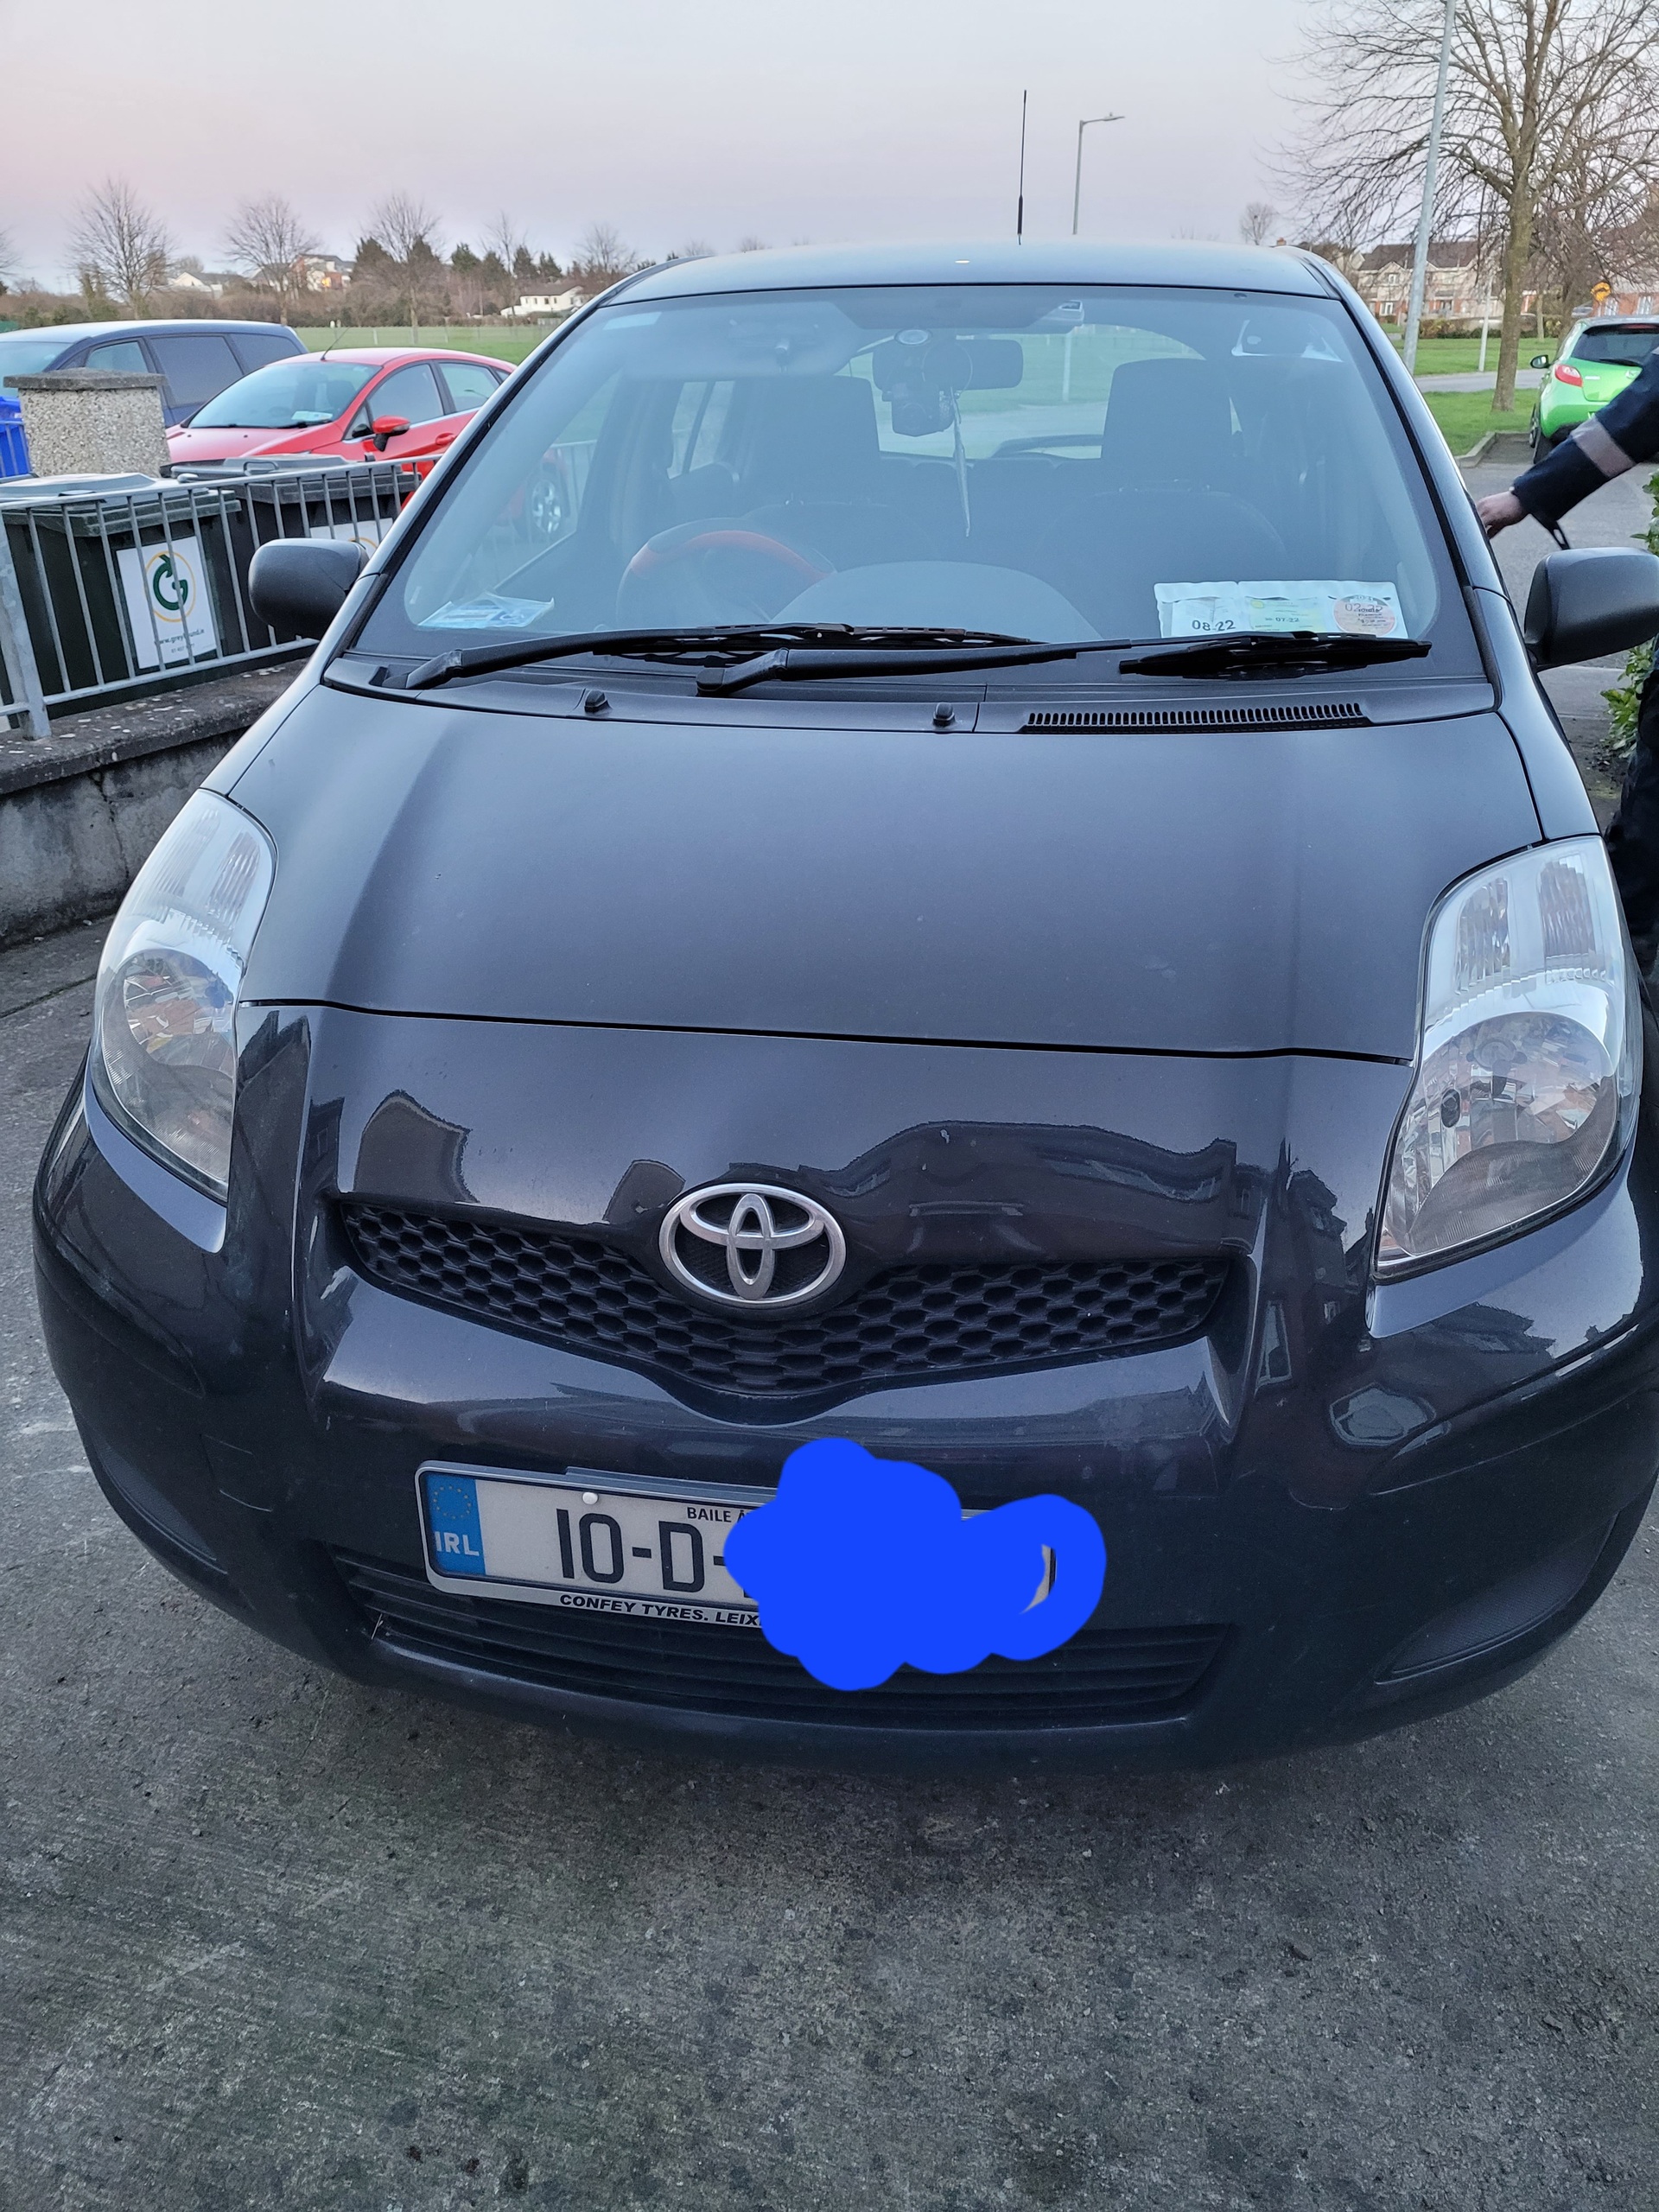 Used Toyota Yaris 2010 in Kildare